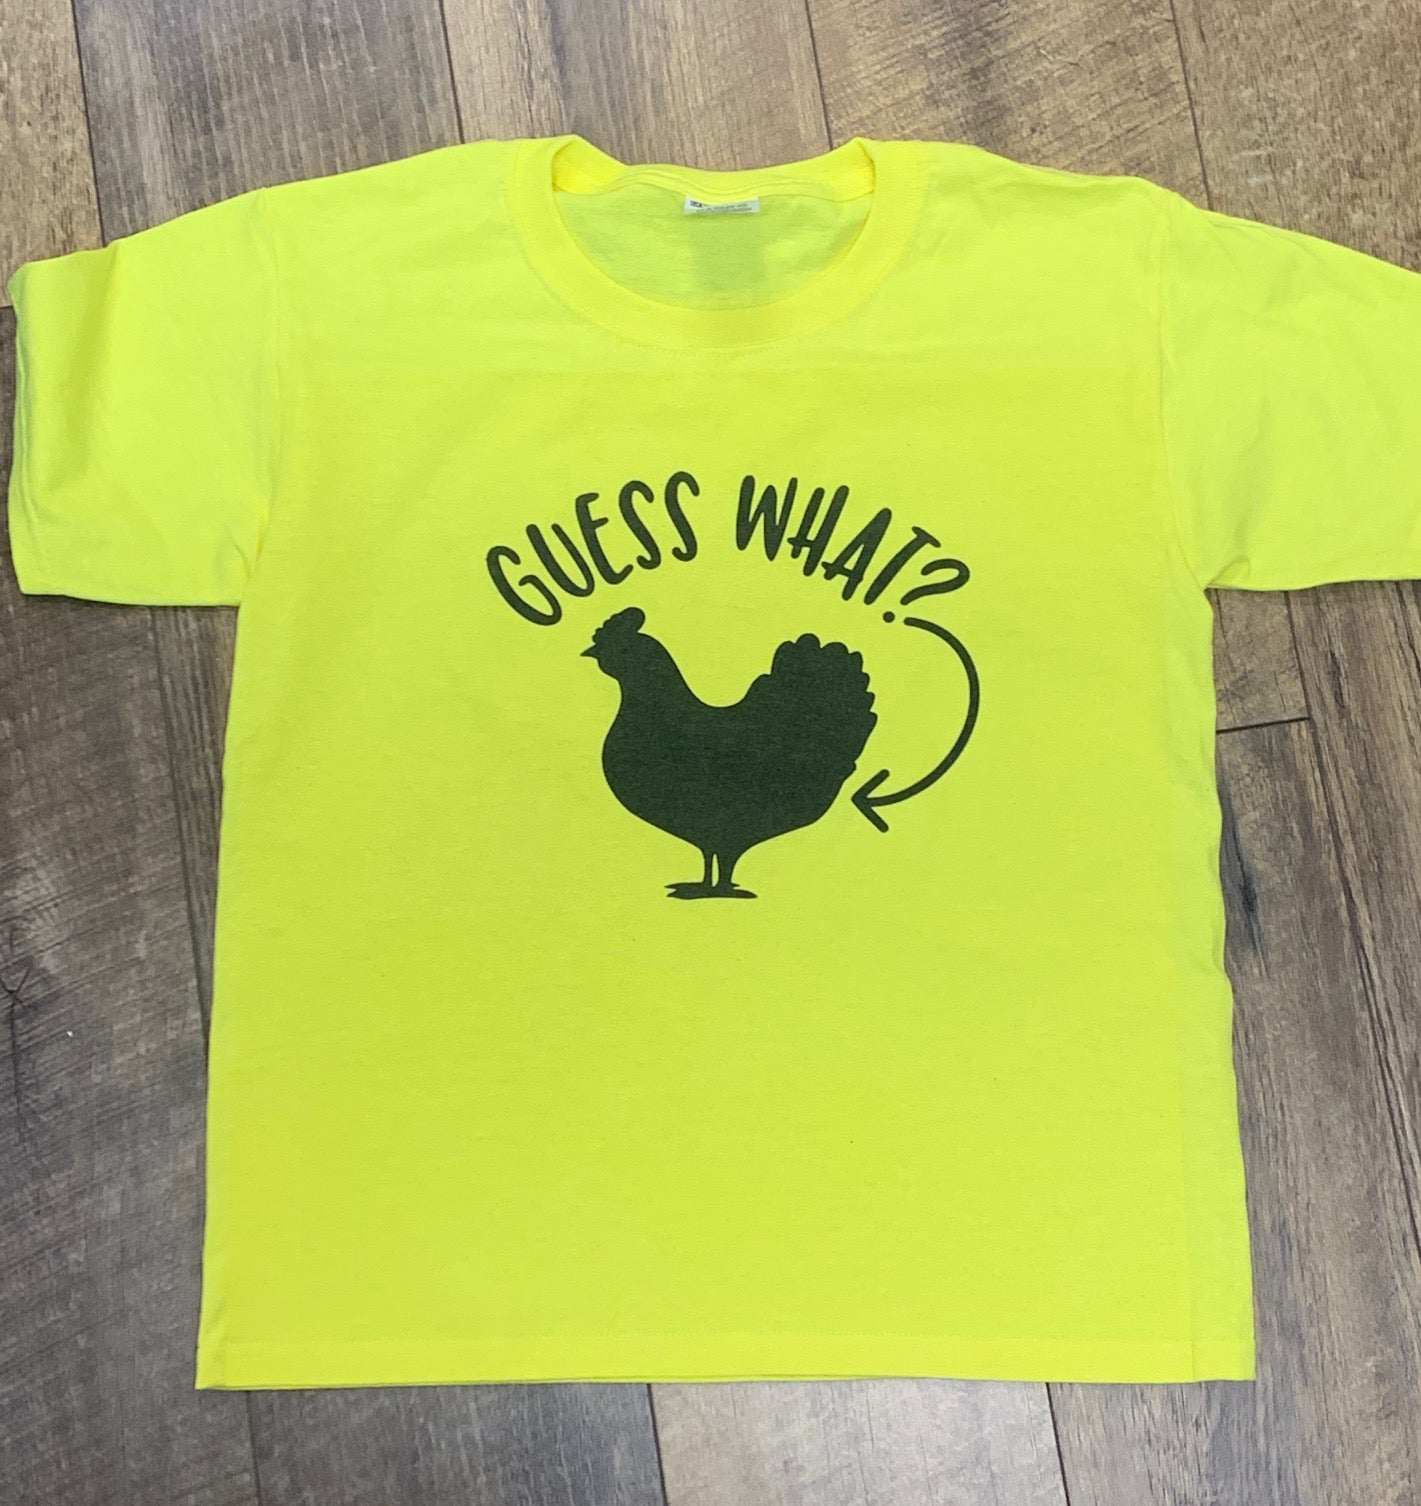 Guess What?  Chicken Butt! T-Shirt